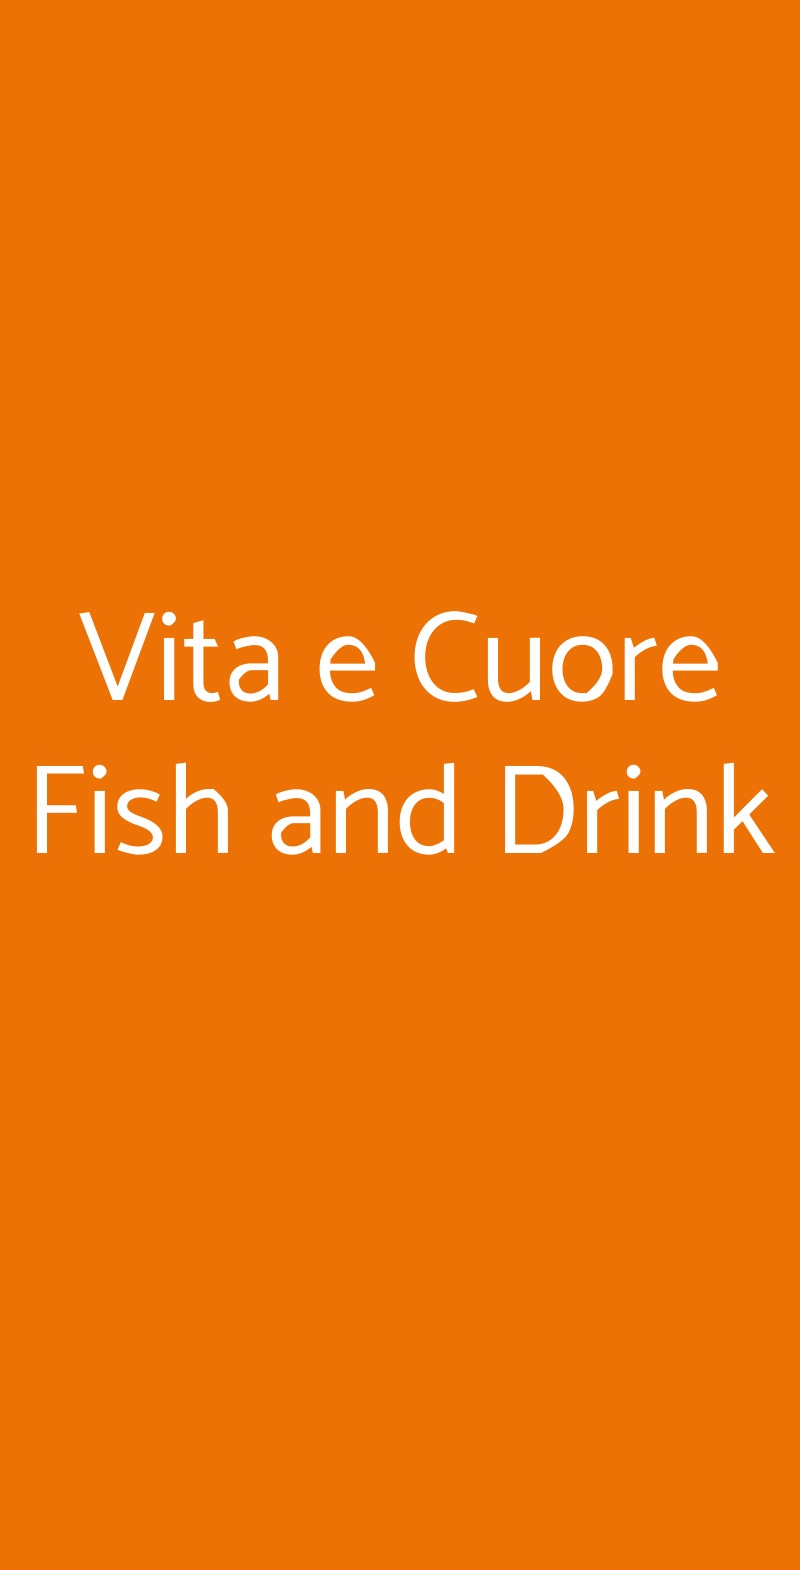 Vita e Cuore Fish and Drink Aprilia menù 1 pagina